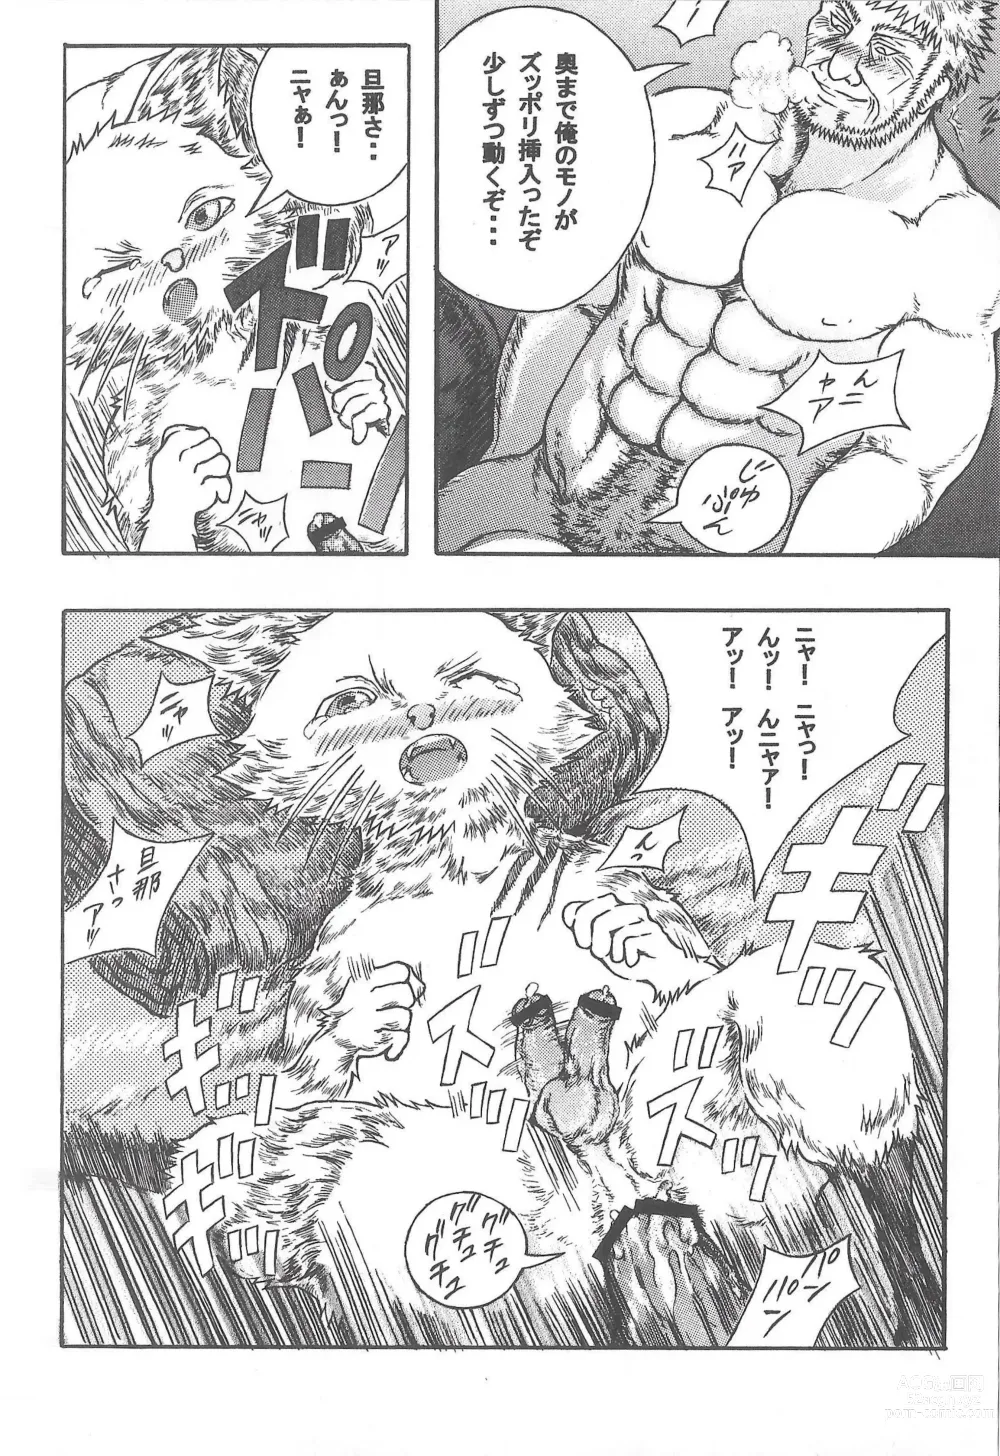 Page 27 of doujinshi Airu Monhun Dream